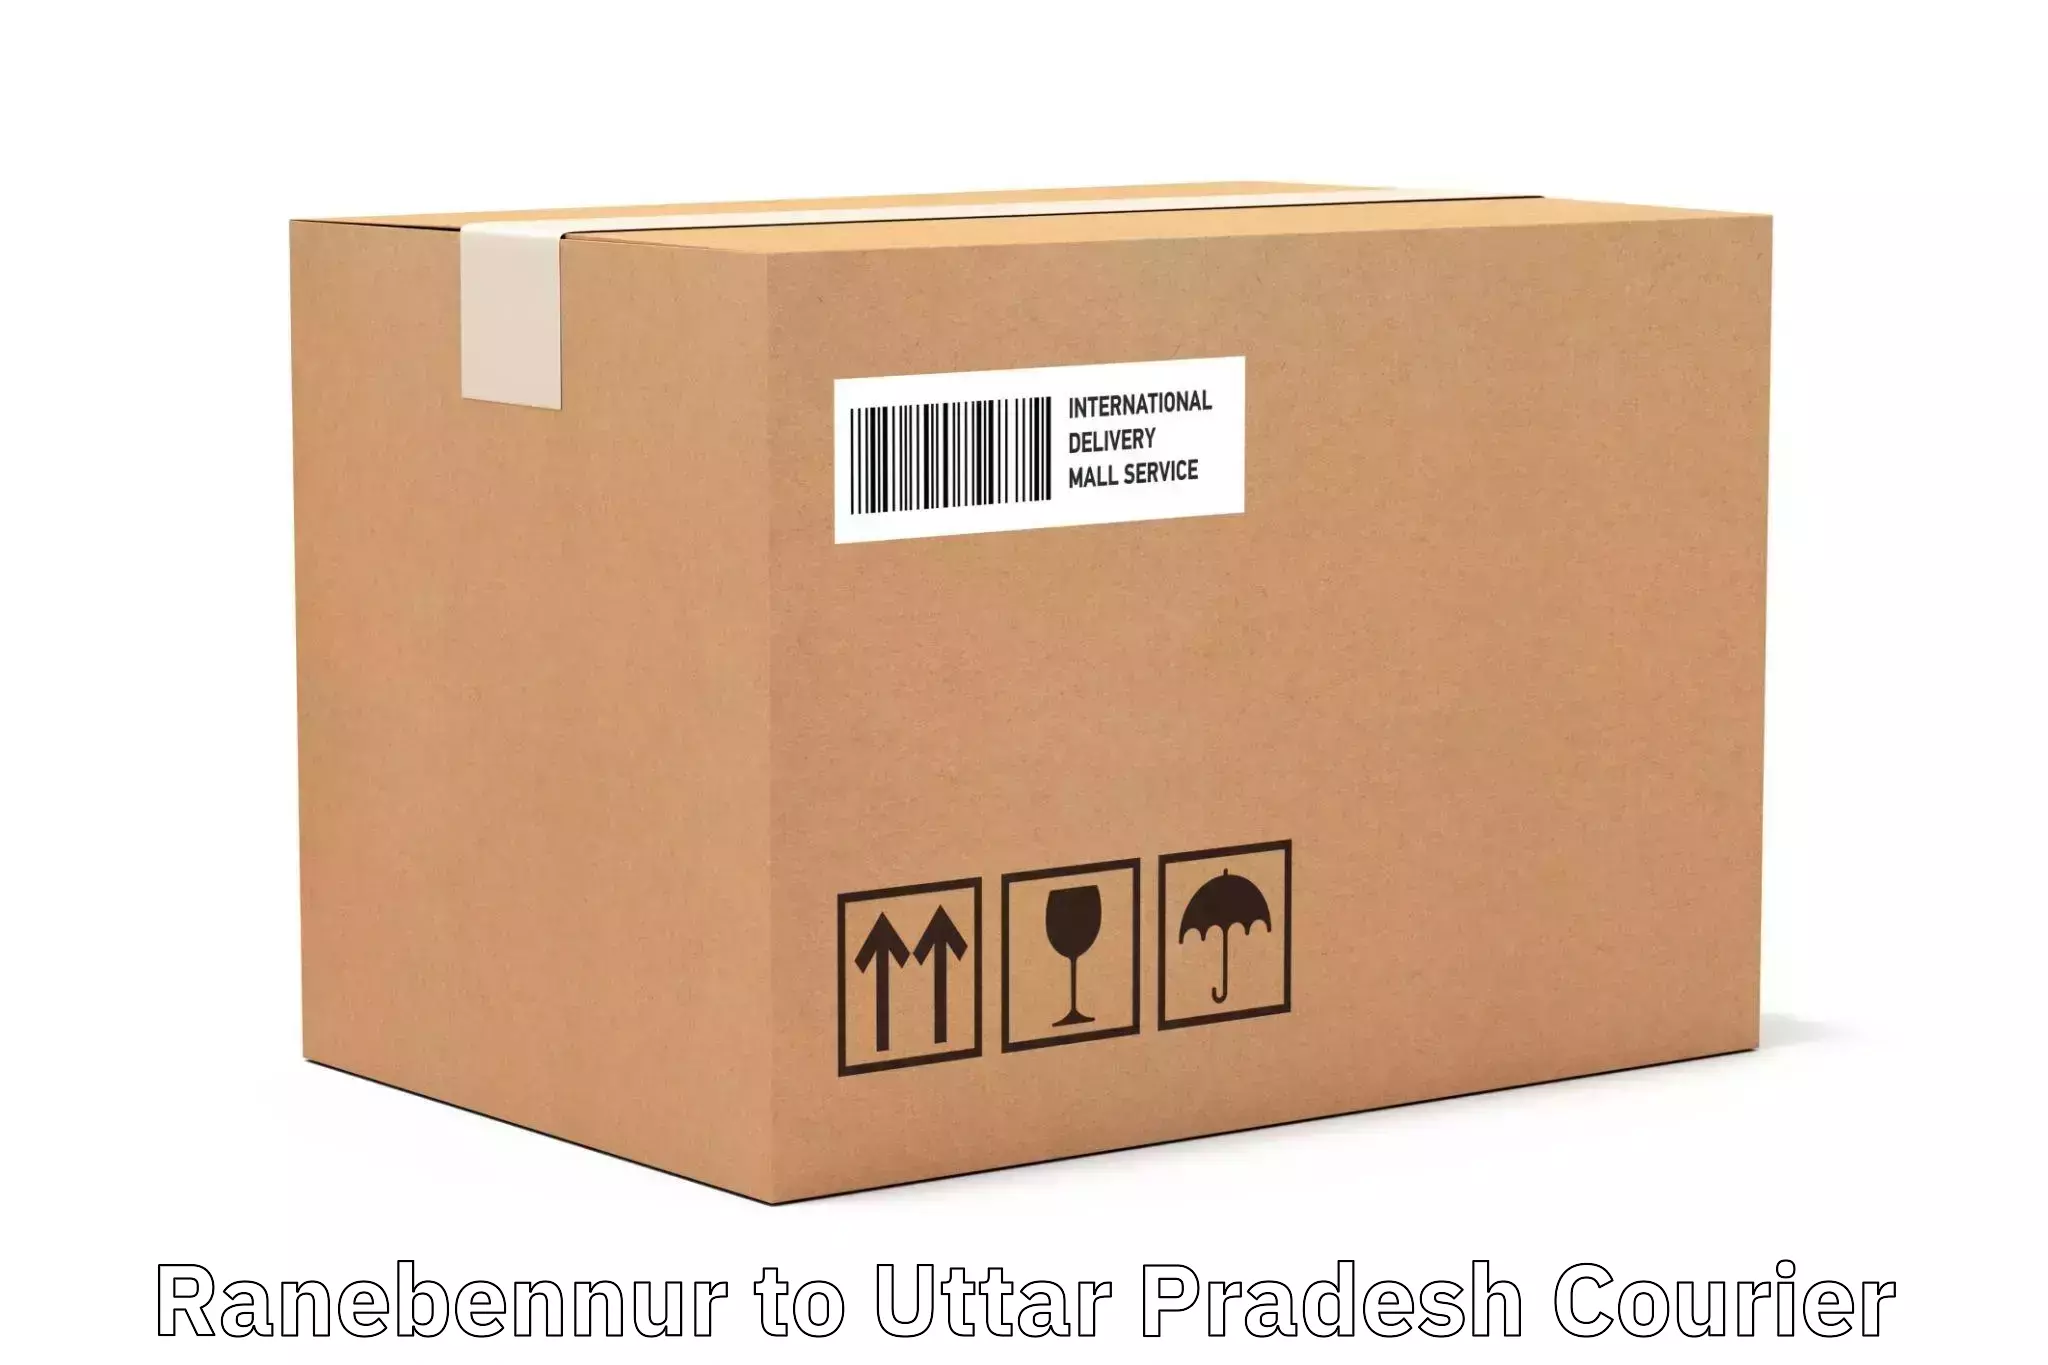 Business courier solutions Ranebennur to Uttar Pradesh